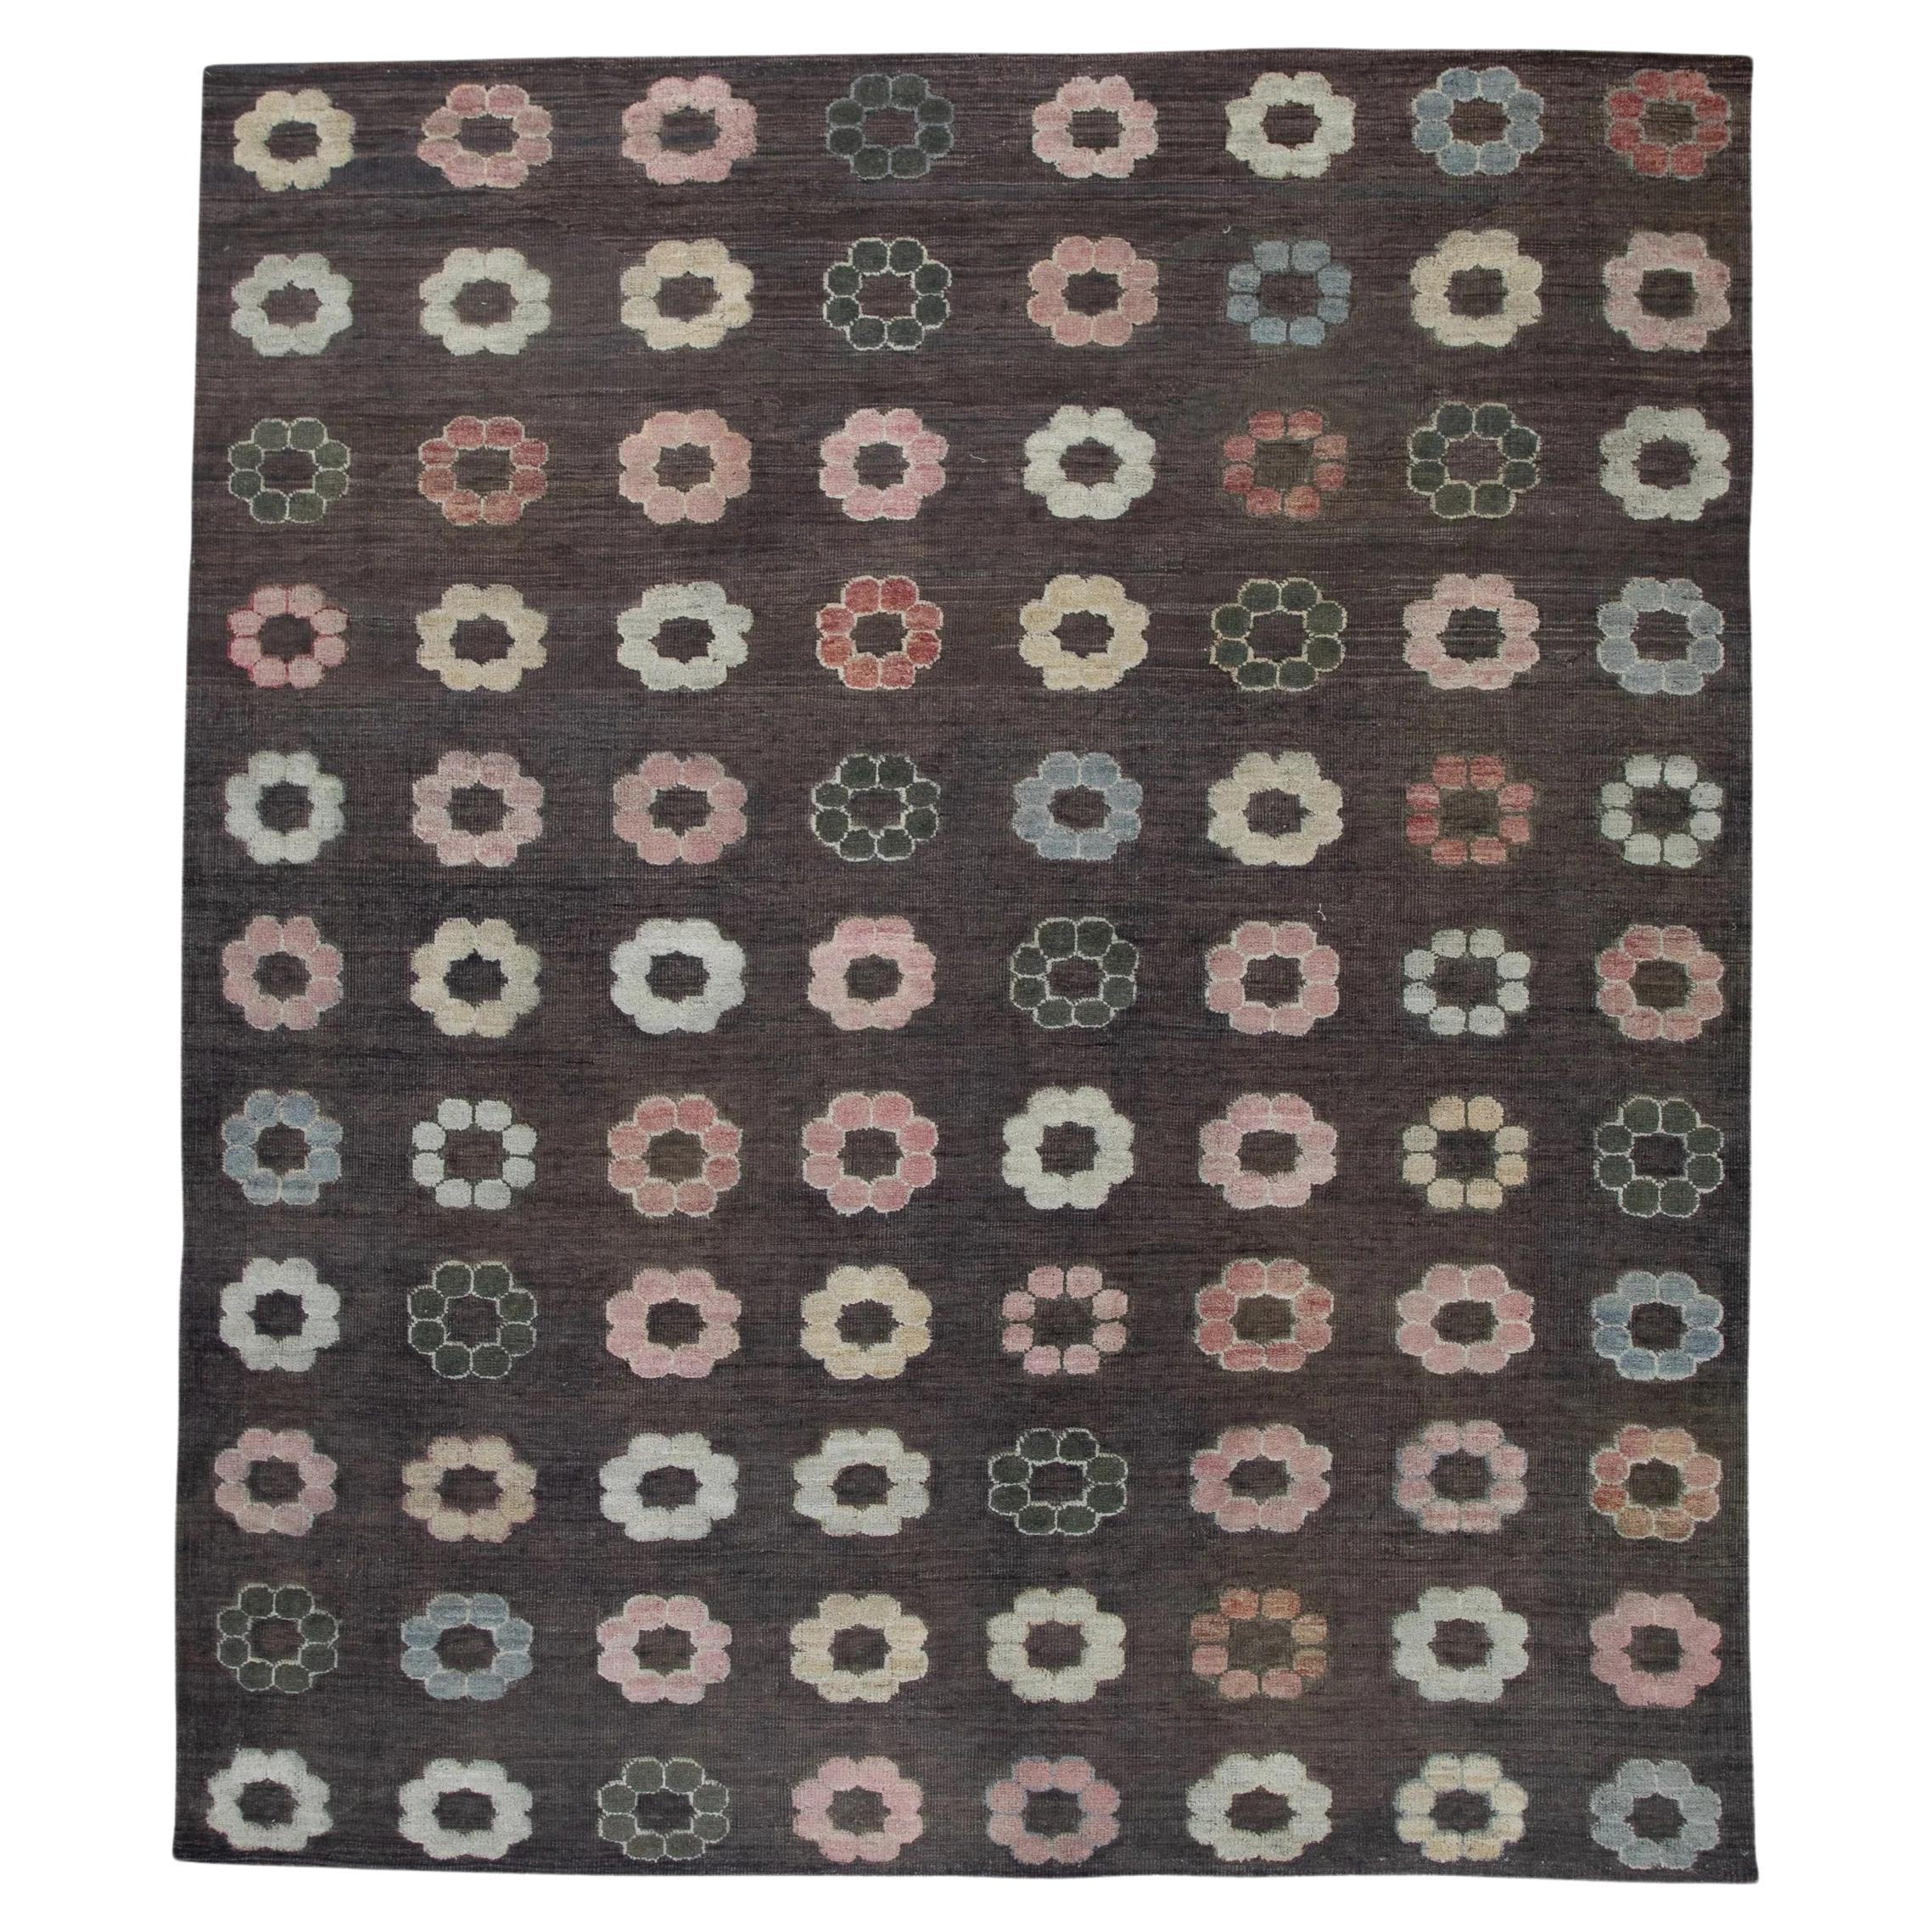 Brown Flatweave Handmade Wool Rug in Pink Floral Pattern 8'8" X 10'